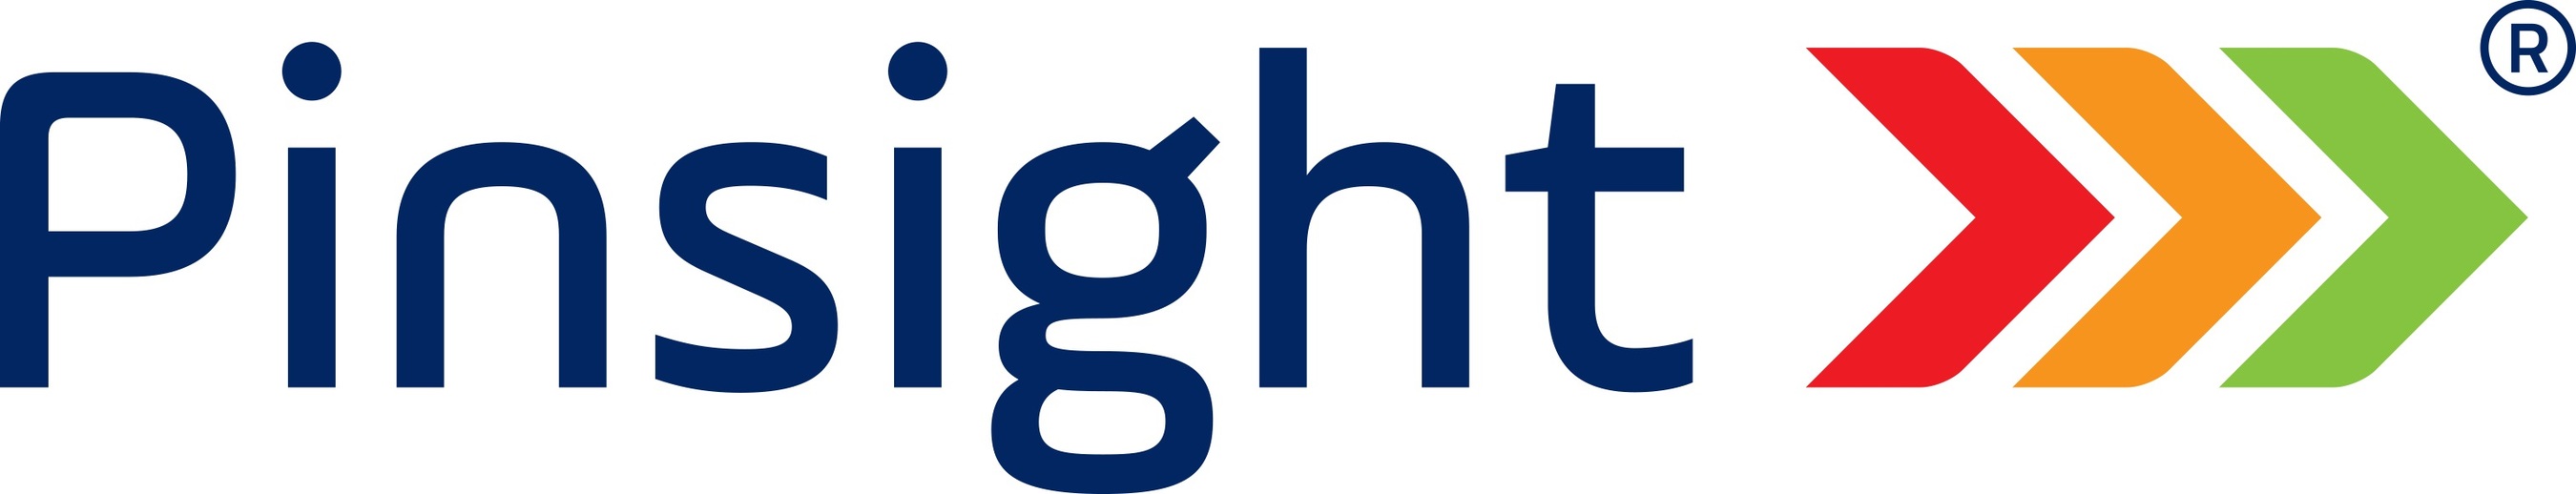 Pinsight logo